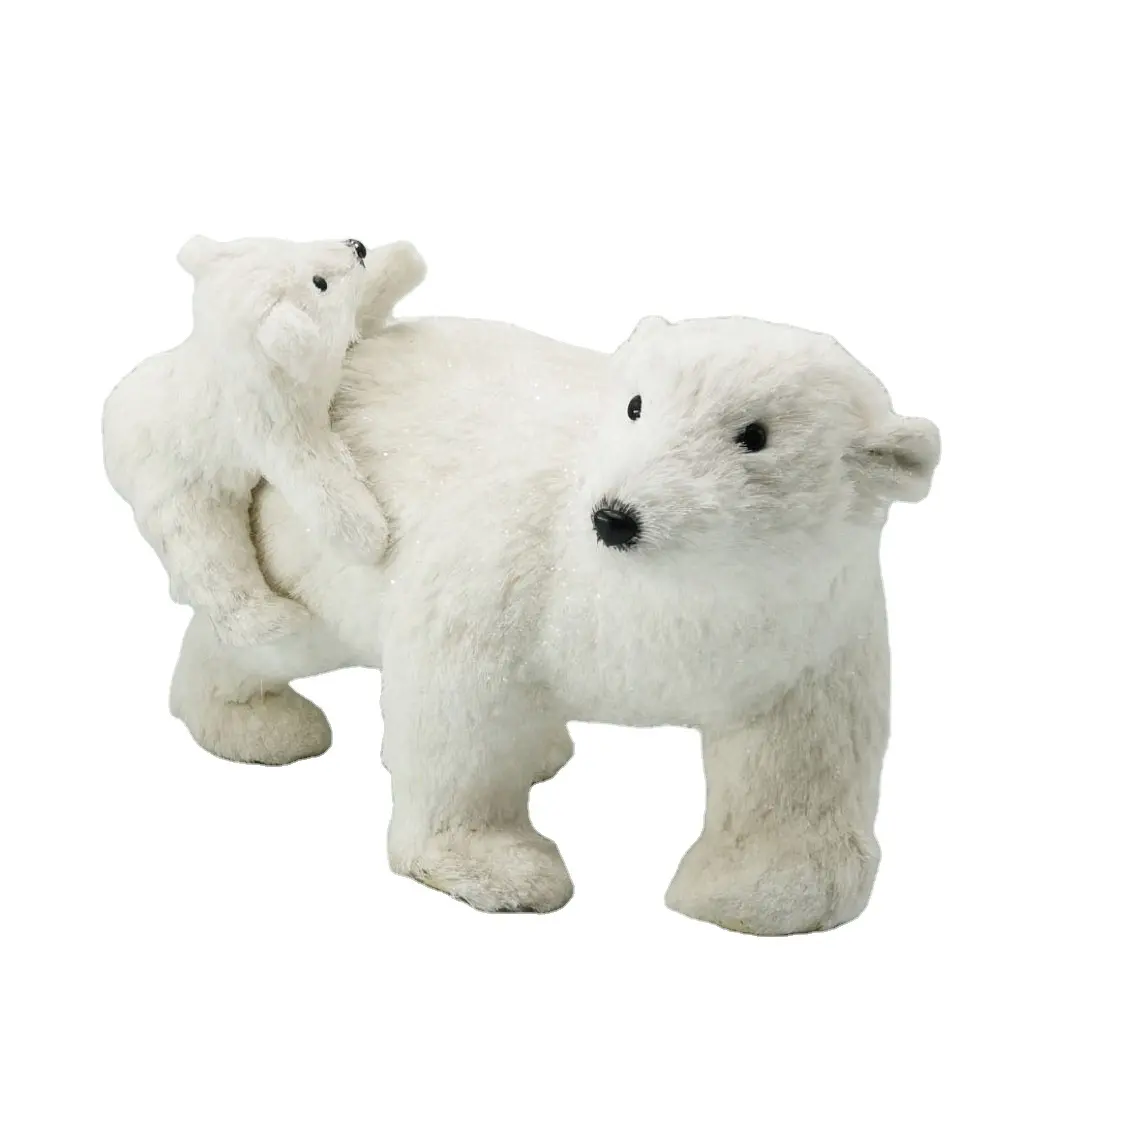 Custom Hot Sale Festival Decoration Lifelike Christmas Ornaments Artificial Polar Bear